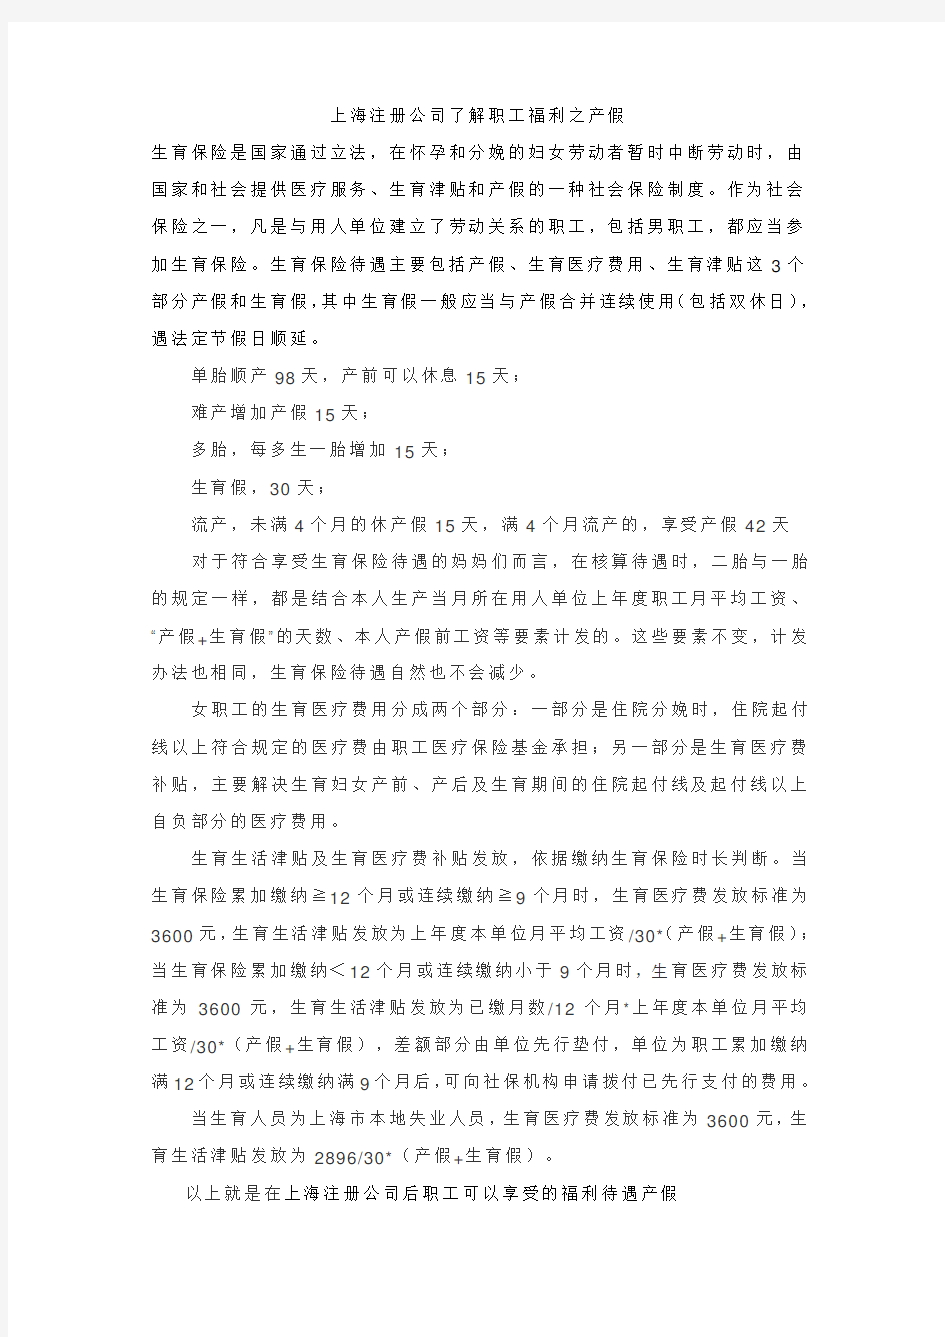 上海注册公司了解职工福利之产假